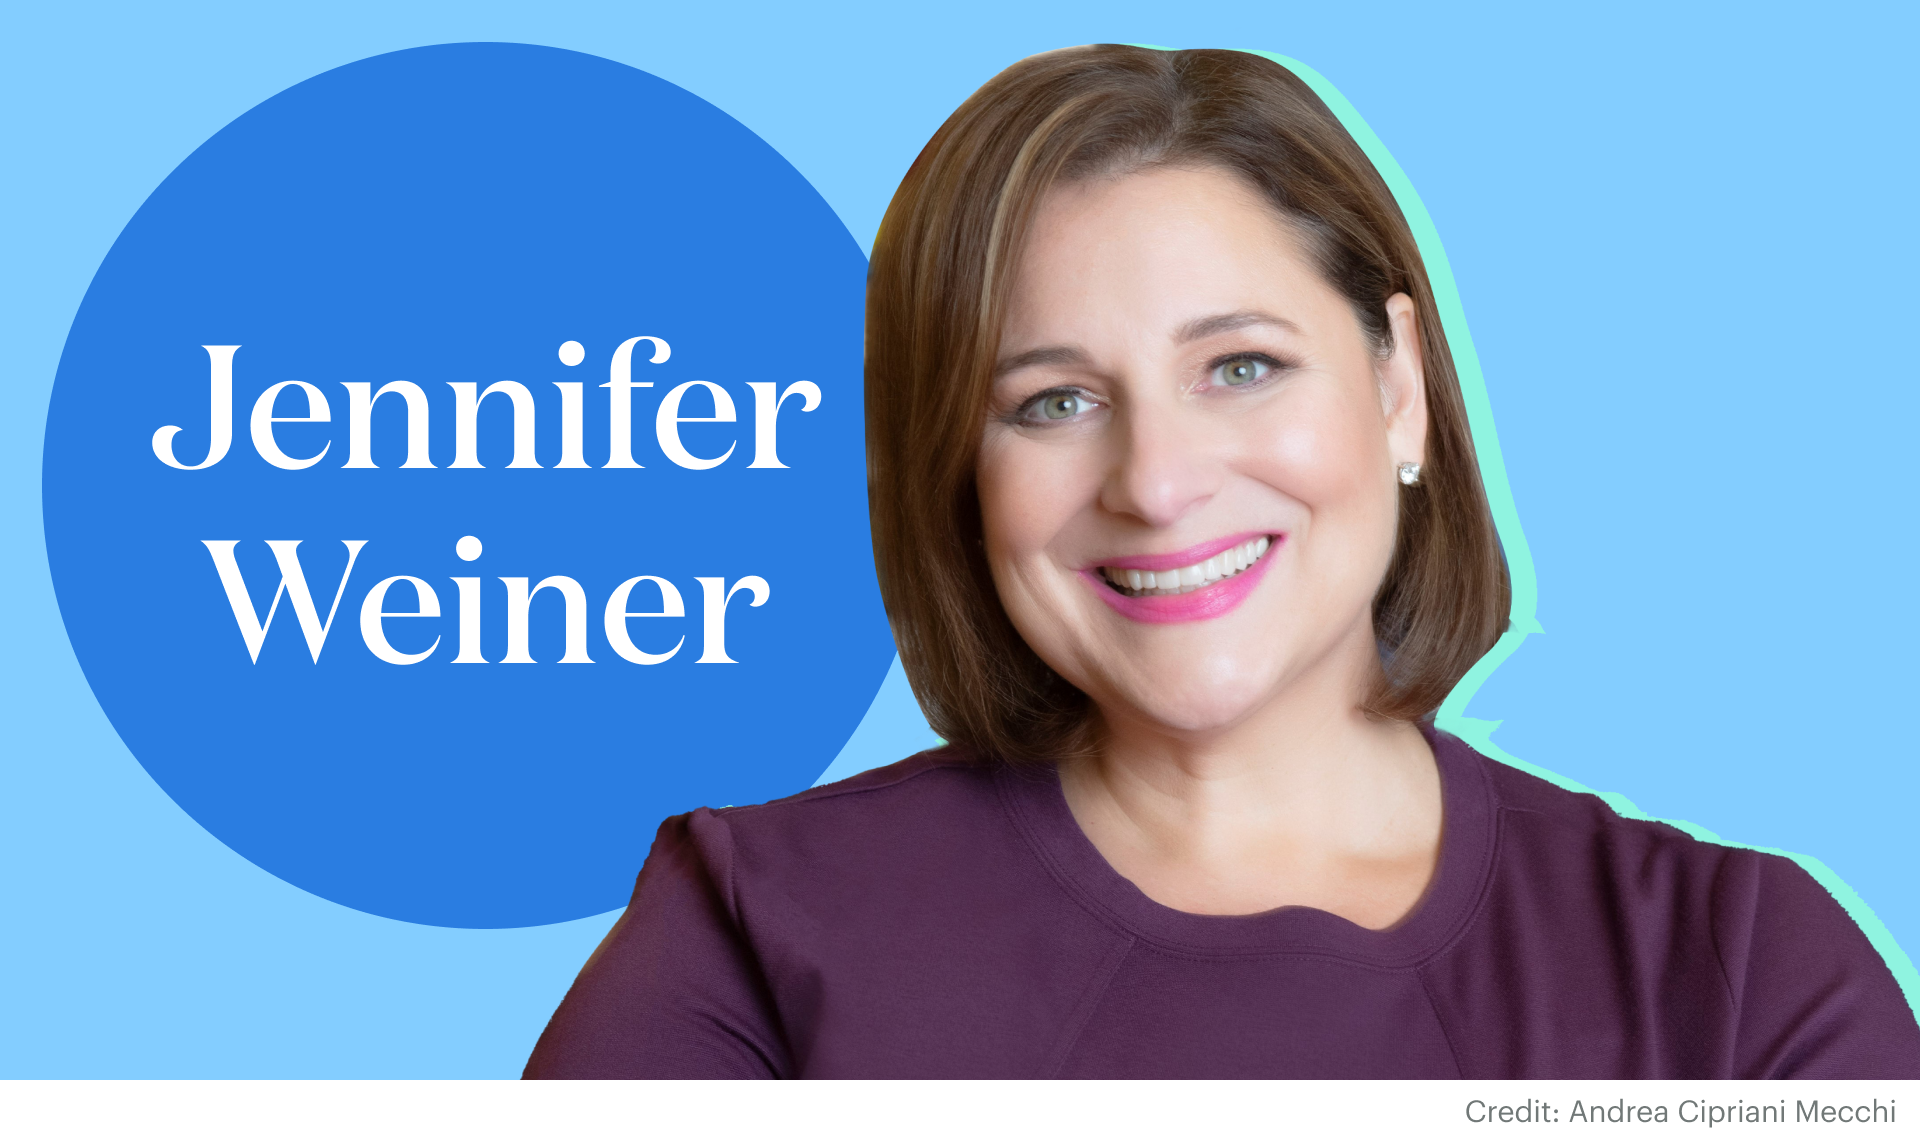 Skimm Her Life: Jennifer Weiner